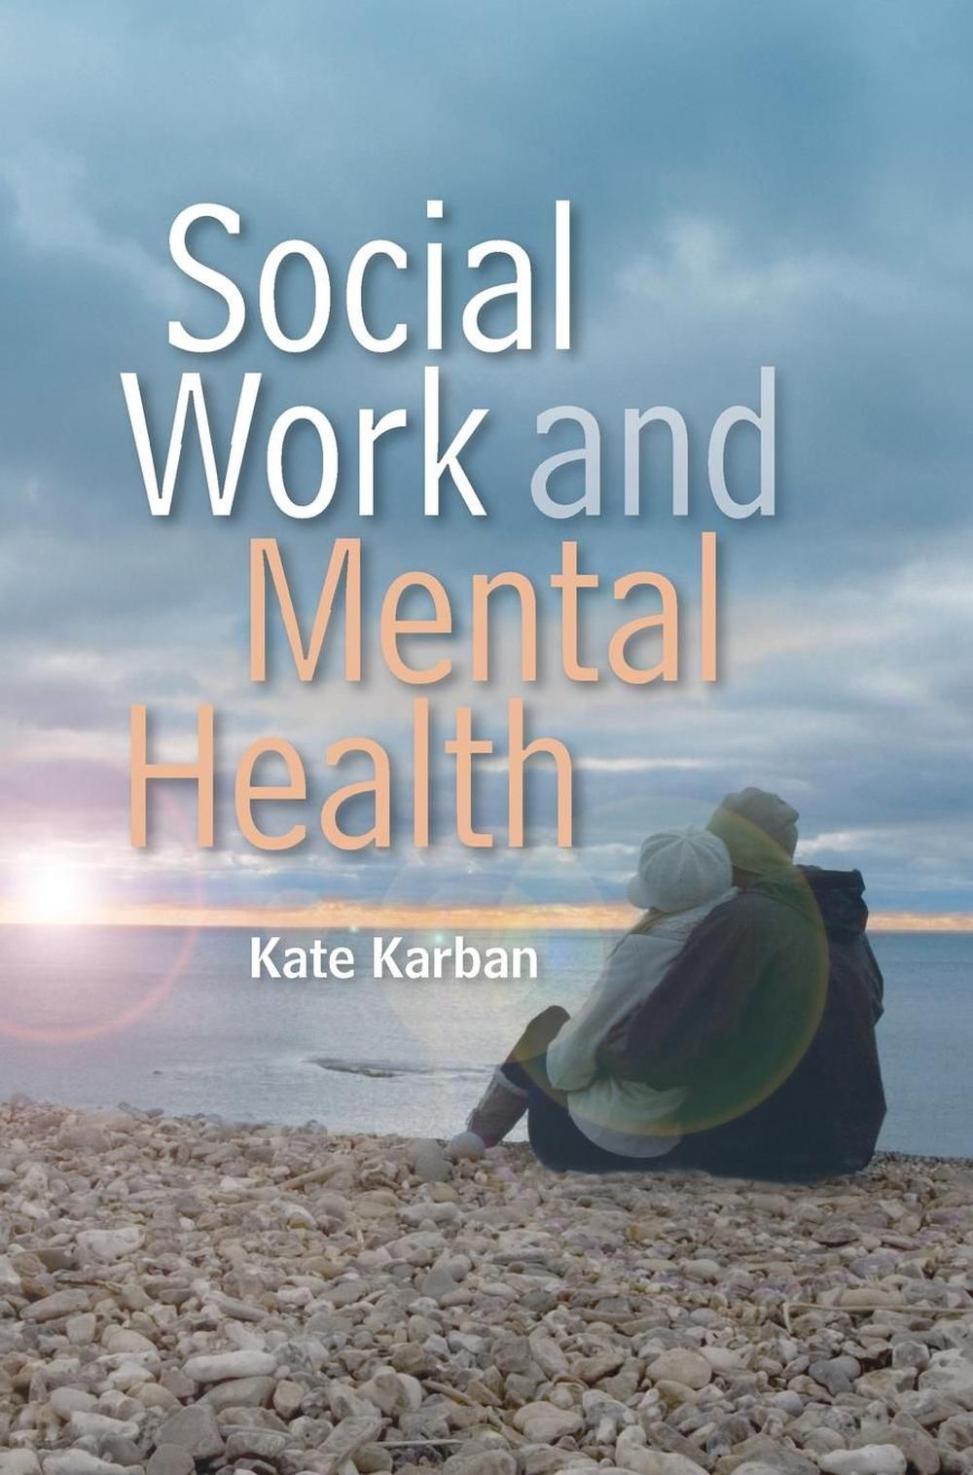 ¿Cómo pueden los trabajadores sociales usar reseñas de libros para promover un cambio social y crear conciencia sobre temas importantes?